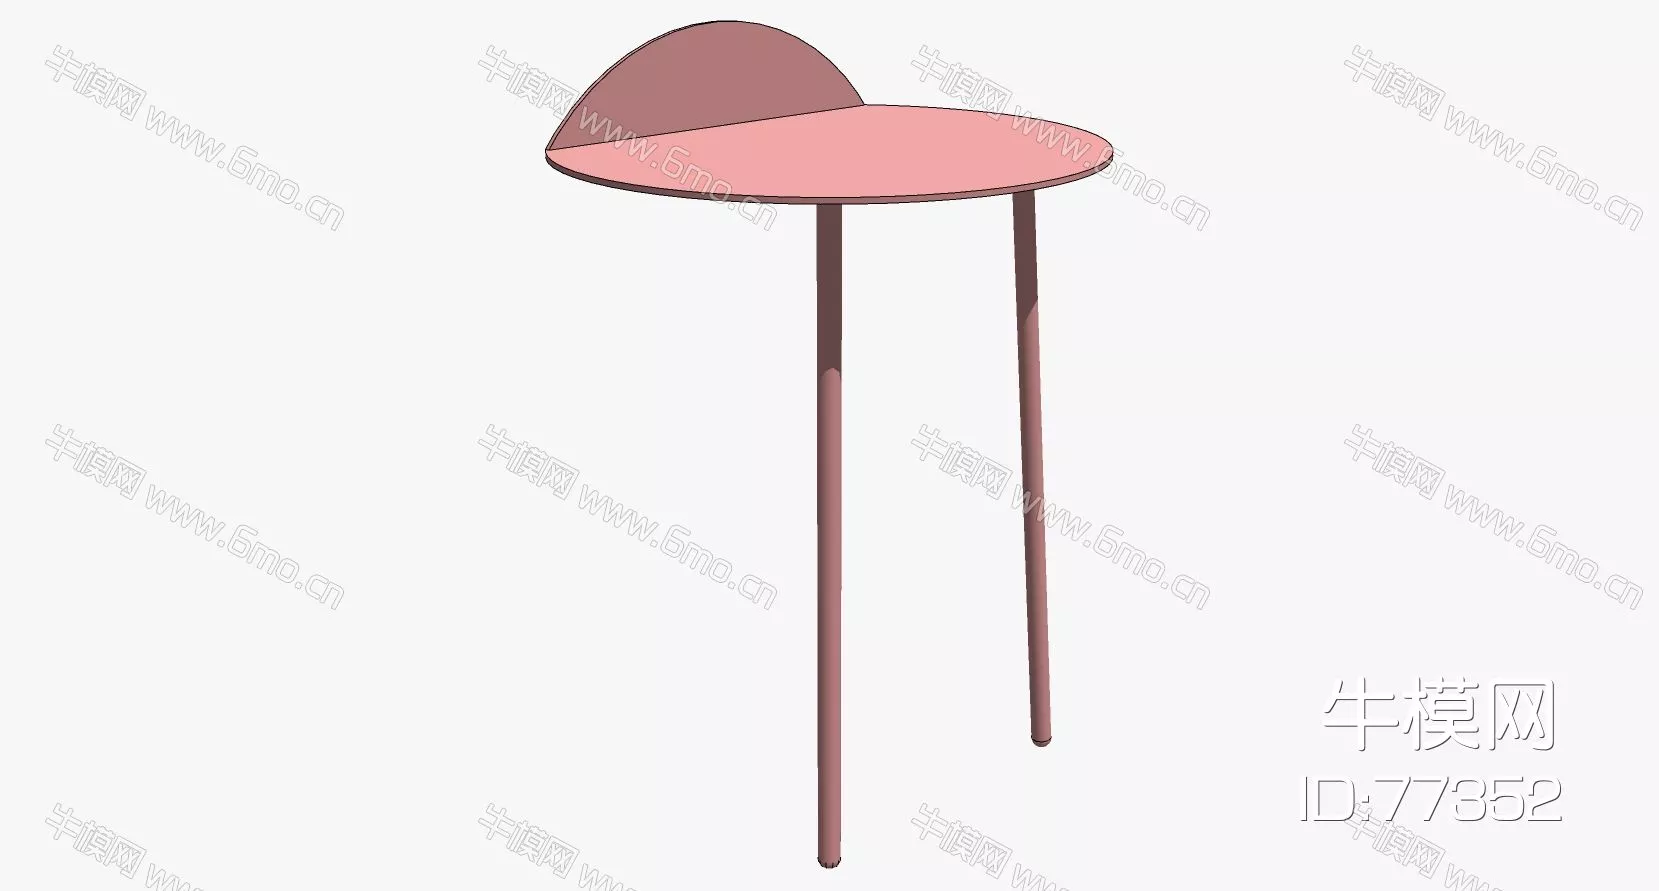 NORDIC SIDE TABLE - SKETCHUP 3D MODEL - ENSCAPE - 77352